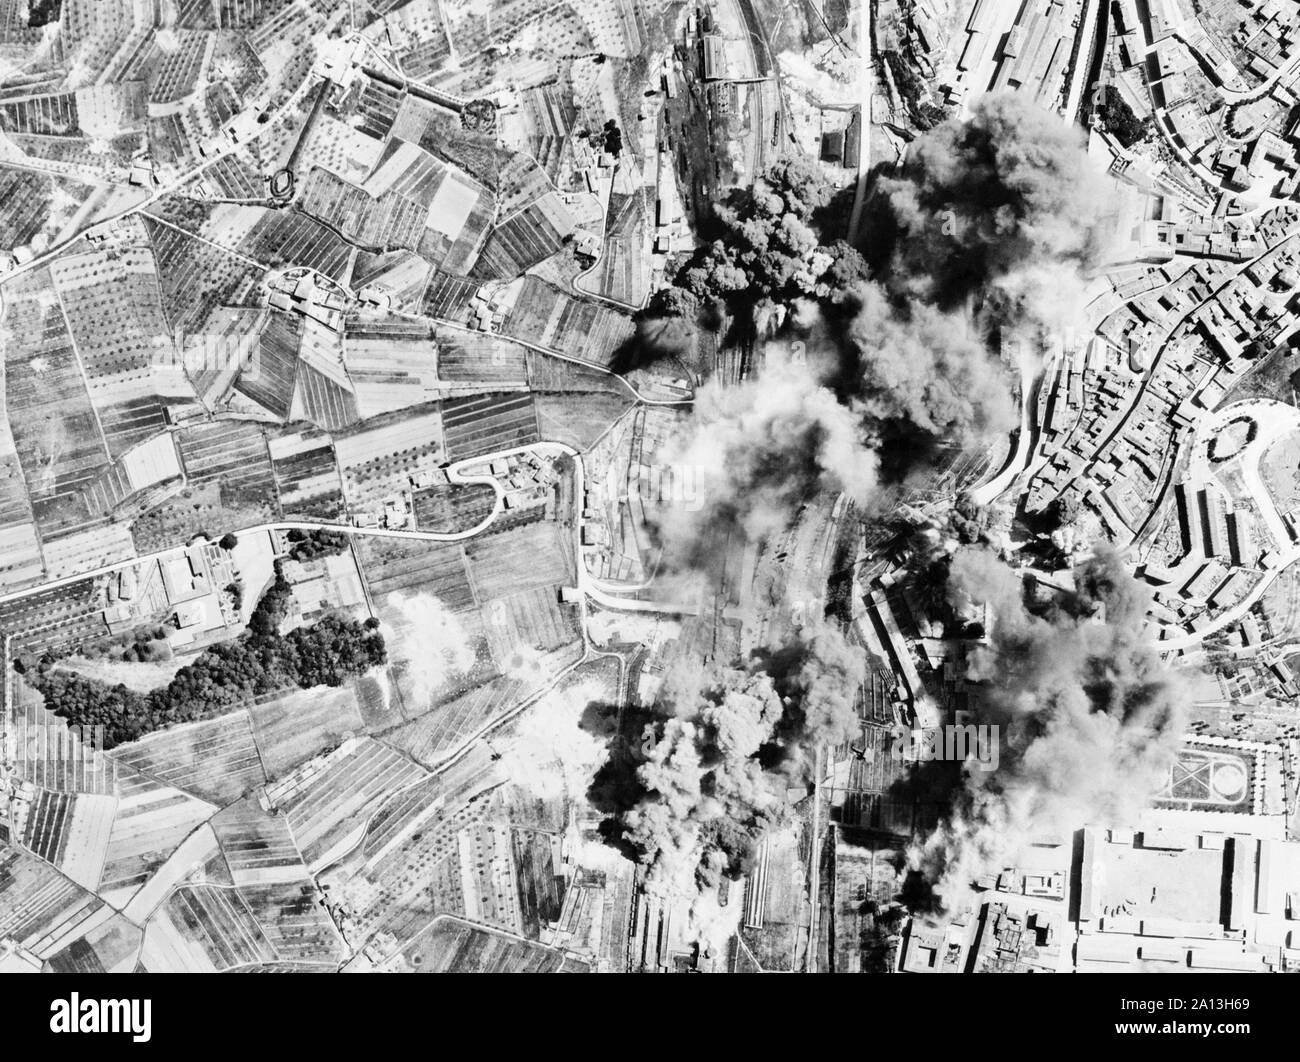 La seconde guerre mondiale axe photo de triage ferroviaire à Sienne, Italie d'être bombardée par l'antenne Méditerranée bombardiers alliés. Banque D'Images